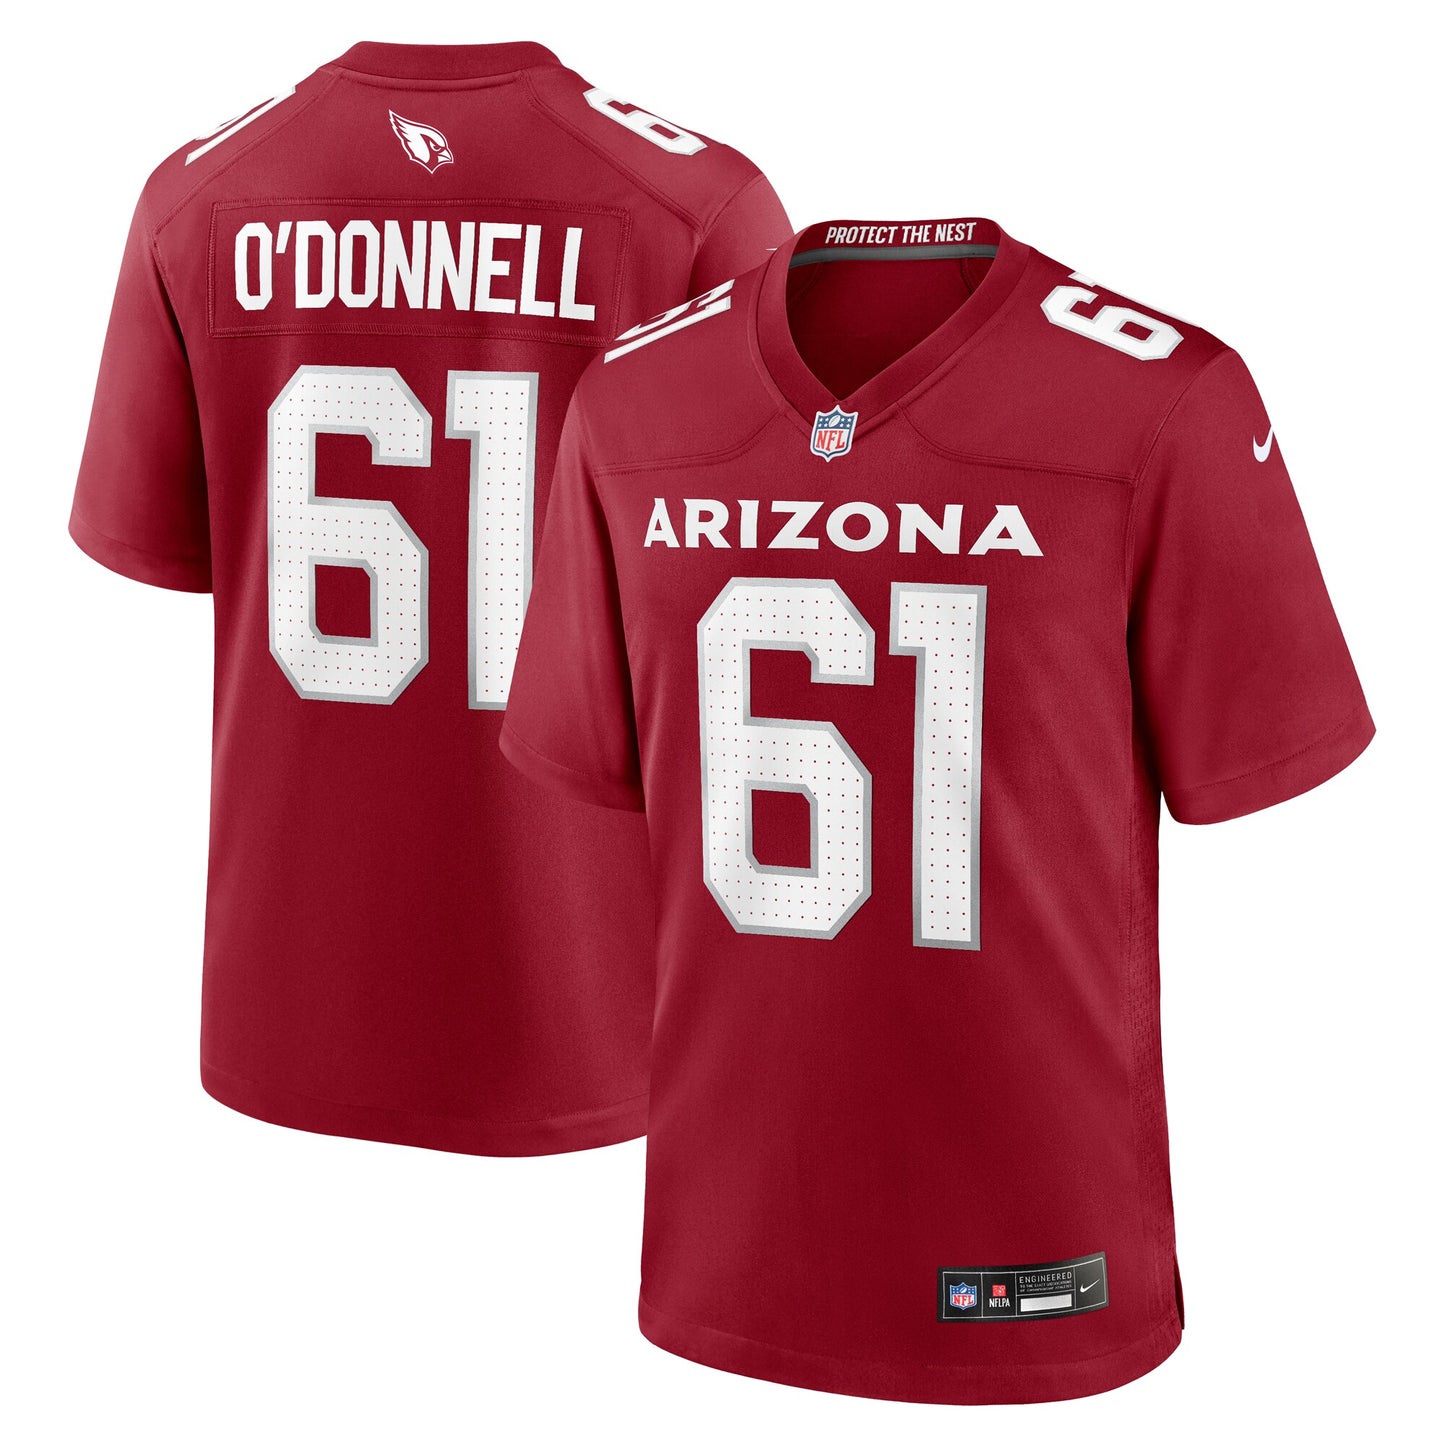 Carter O'Donnell Arizona Cardinals Nike Team Game Jersey - Cardinal